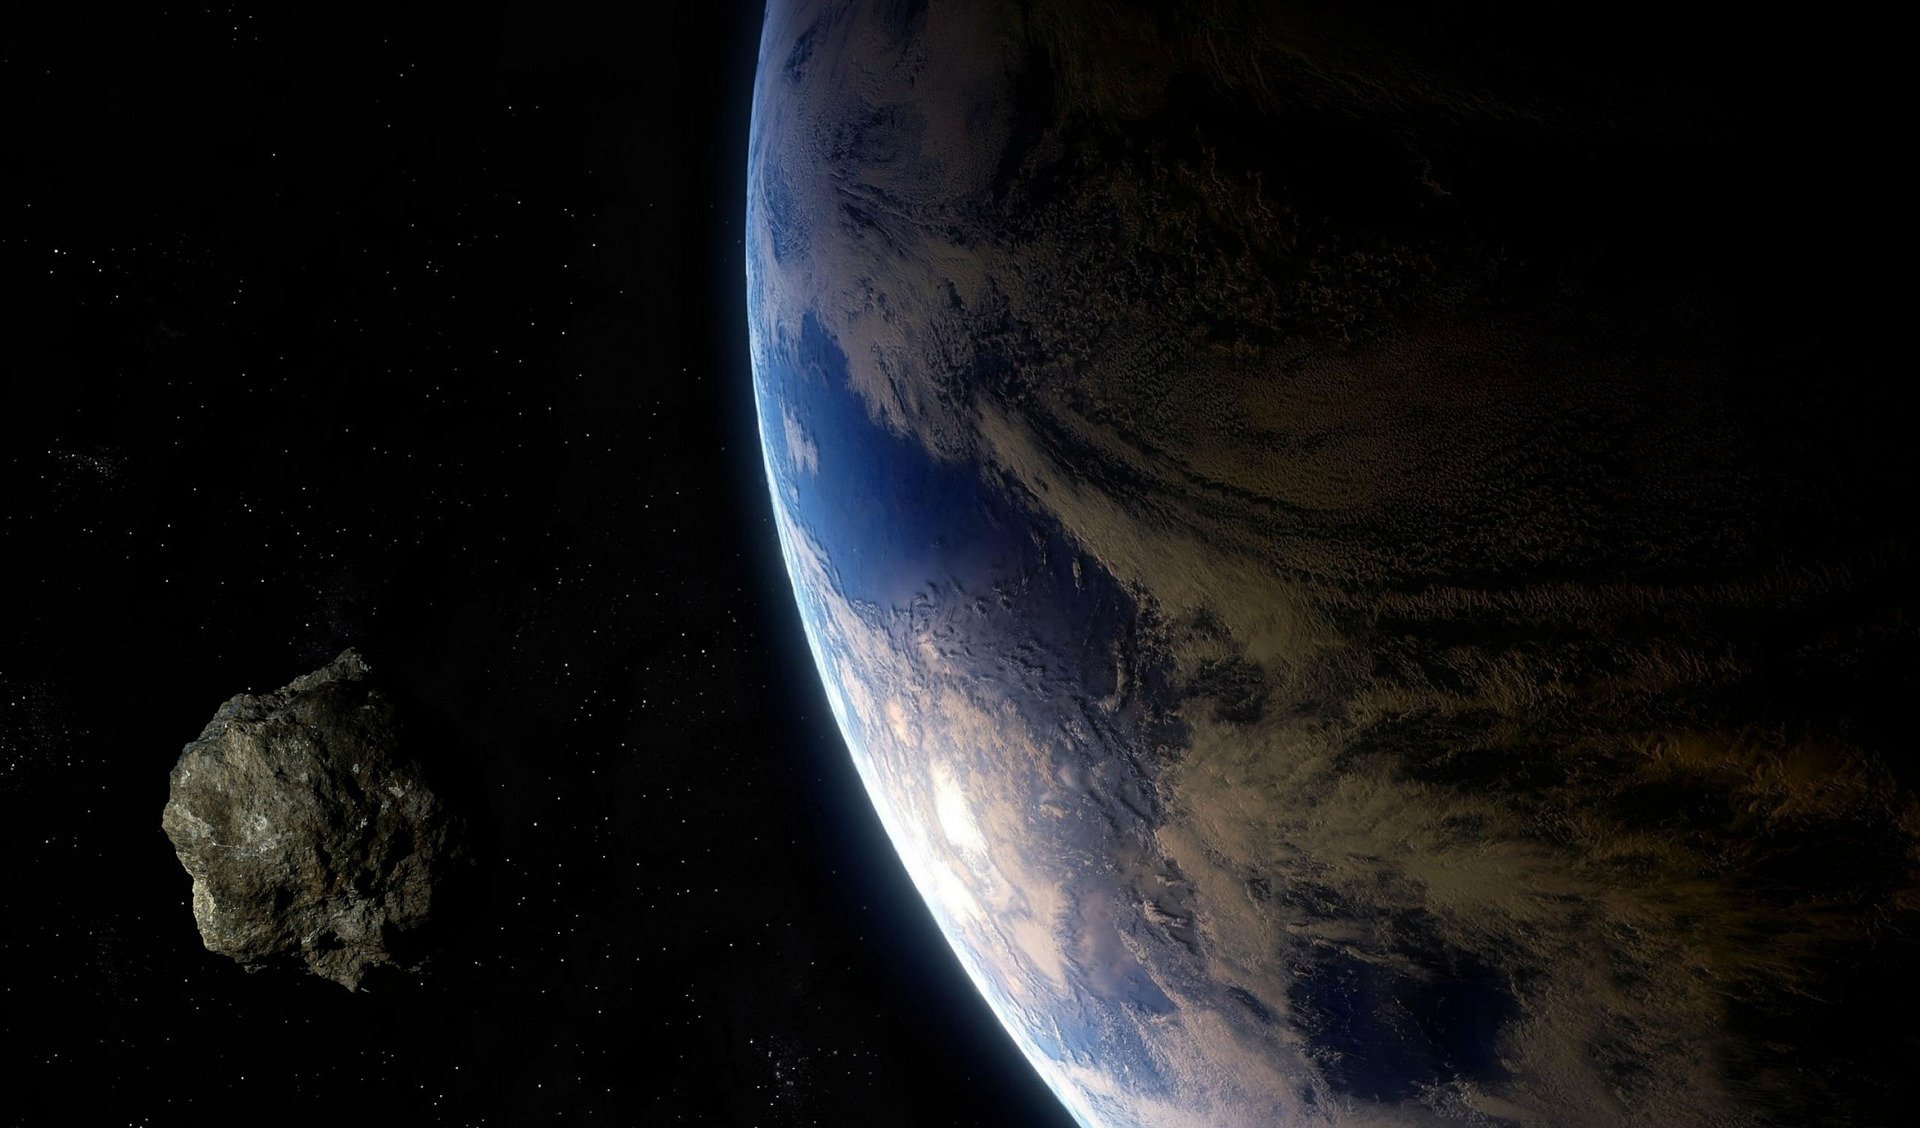 Quatro asteroides passam pela Terra no Yom Kippur, segundo dados da NASA